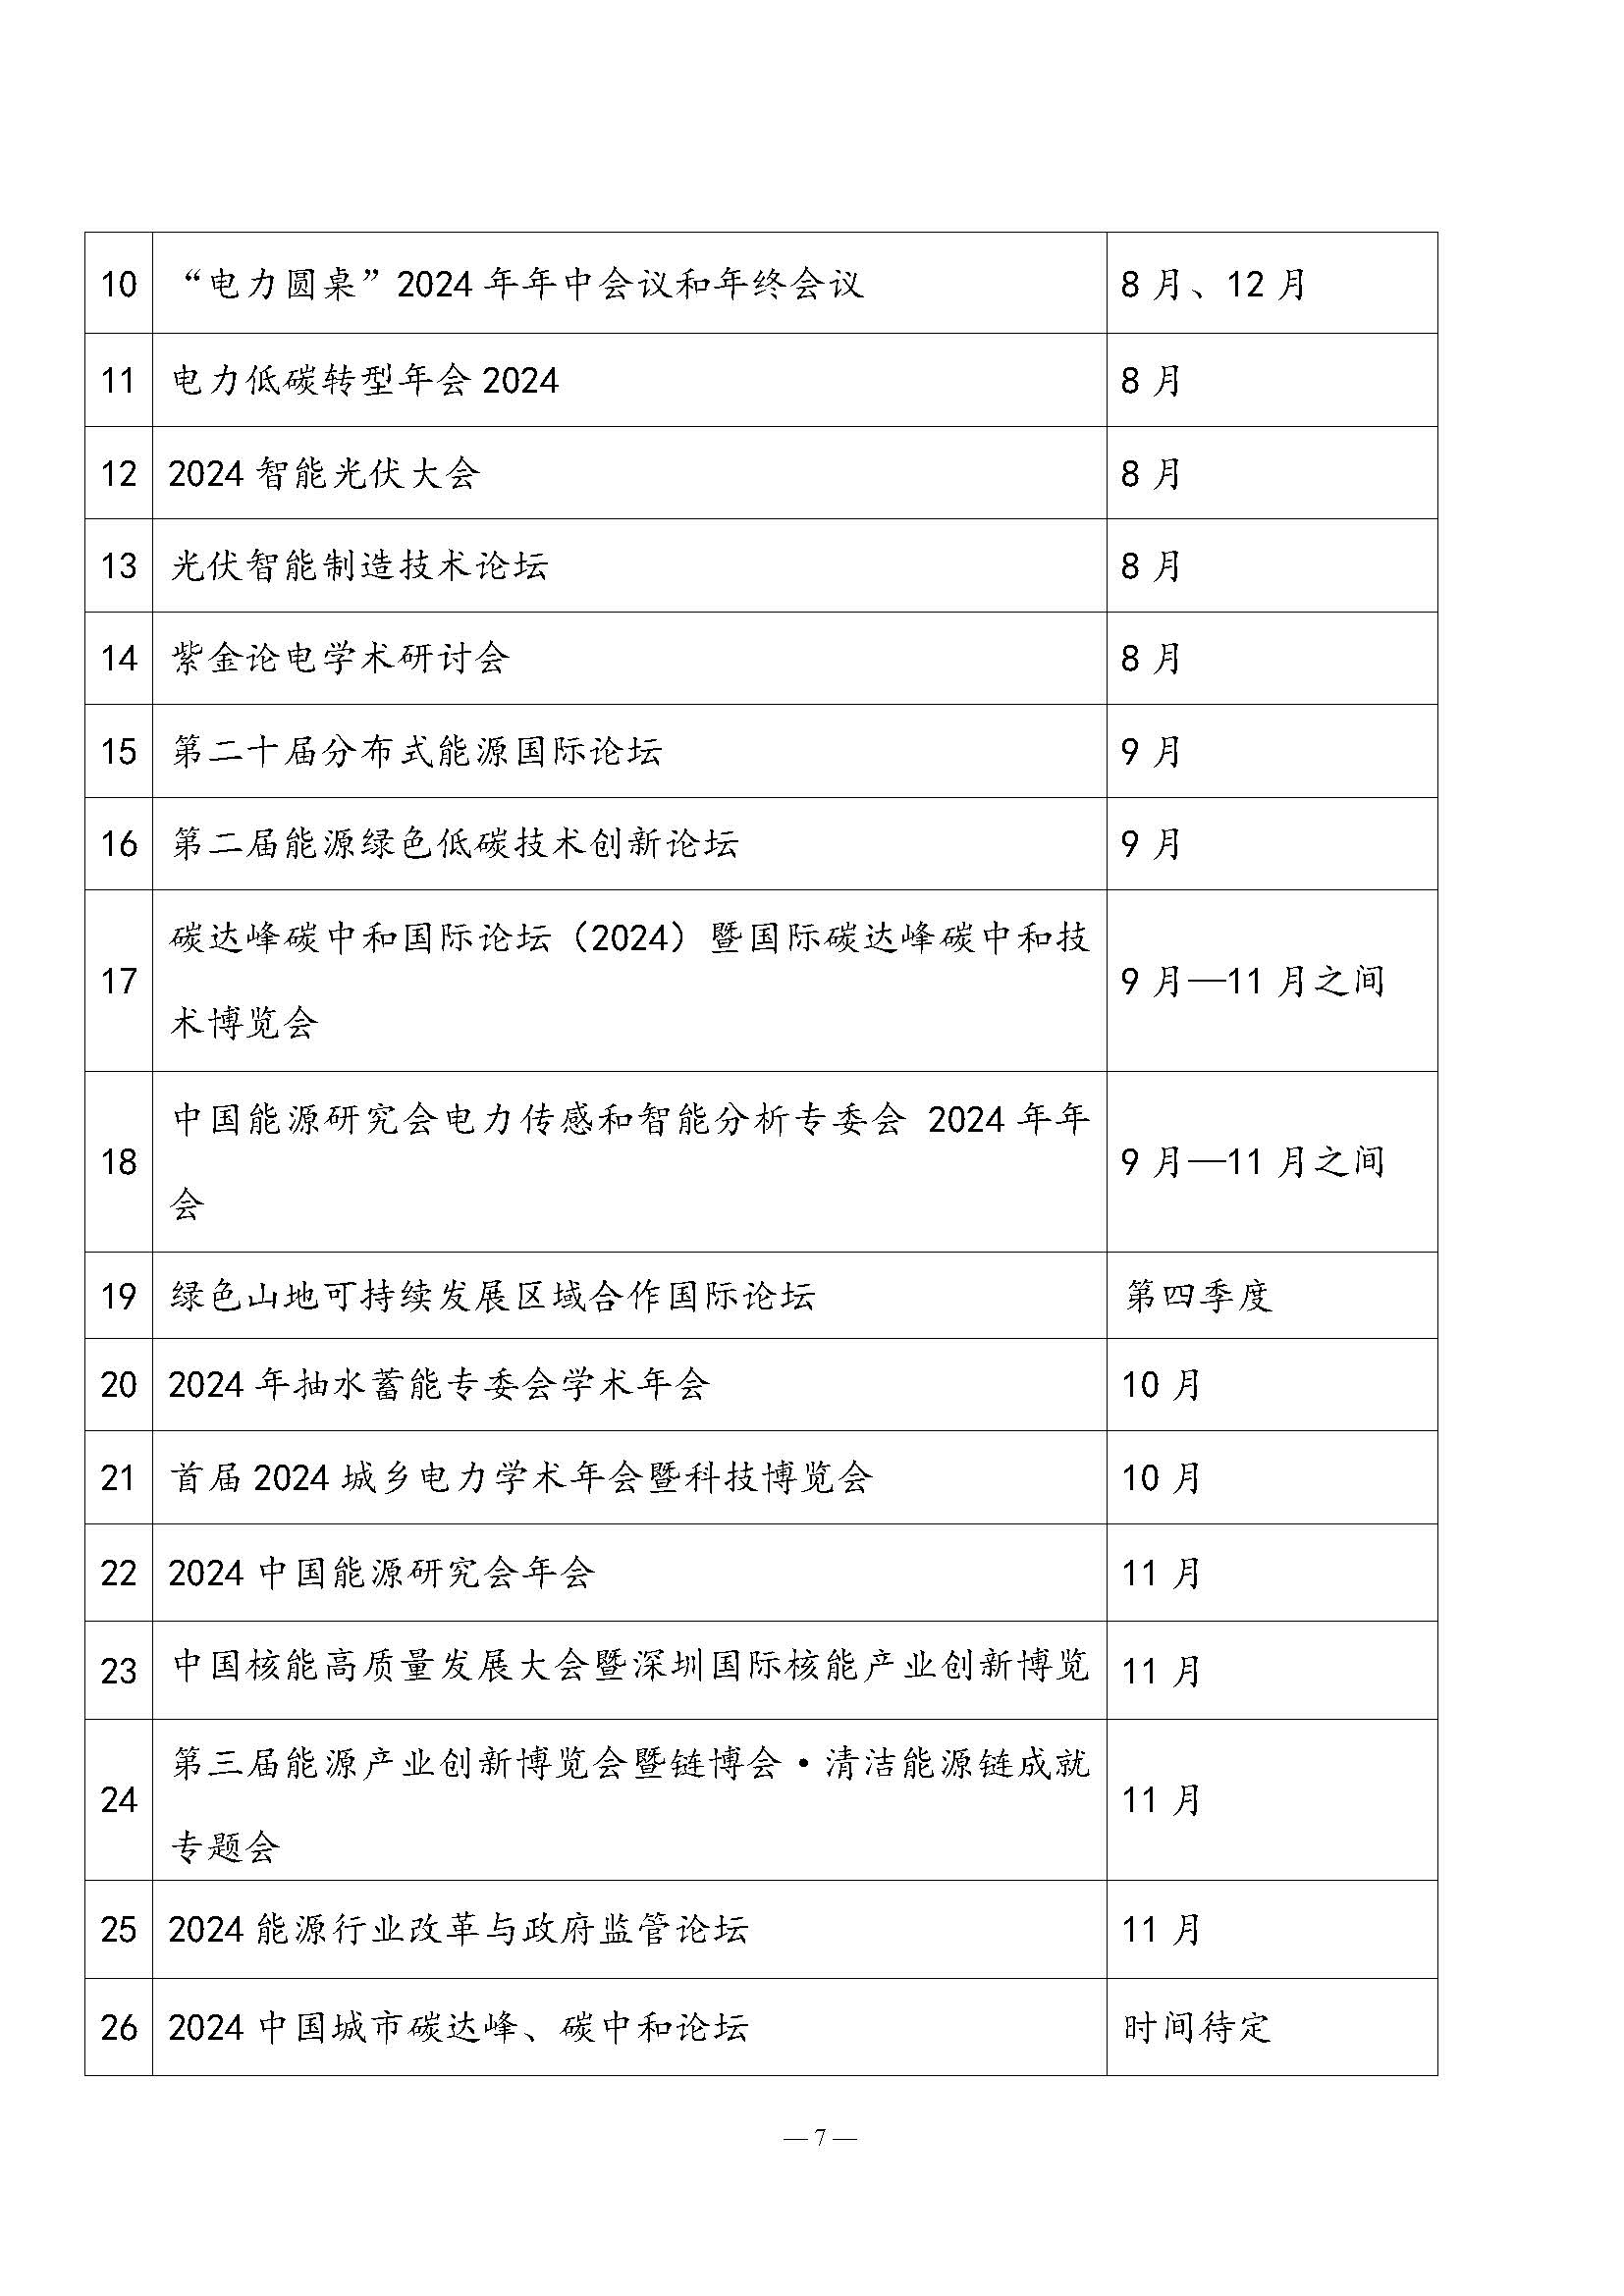 中国能源研究会2023年学术活动和项目汇总(3)_页面_7.jpg